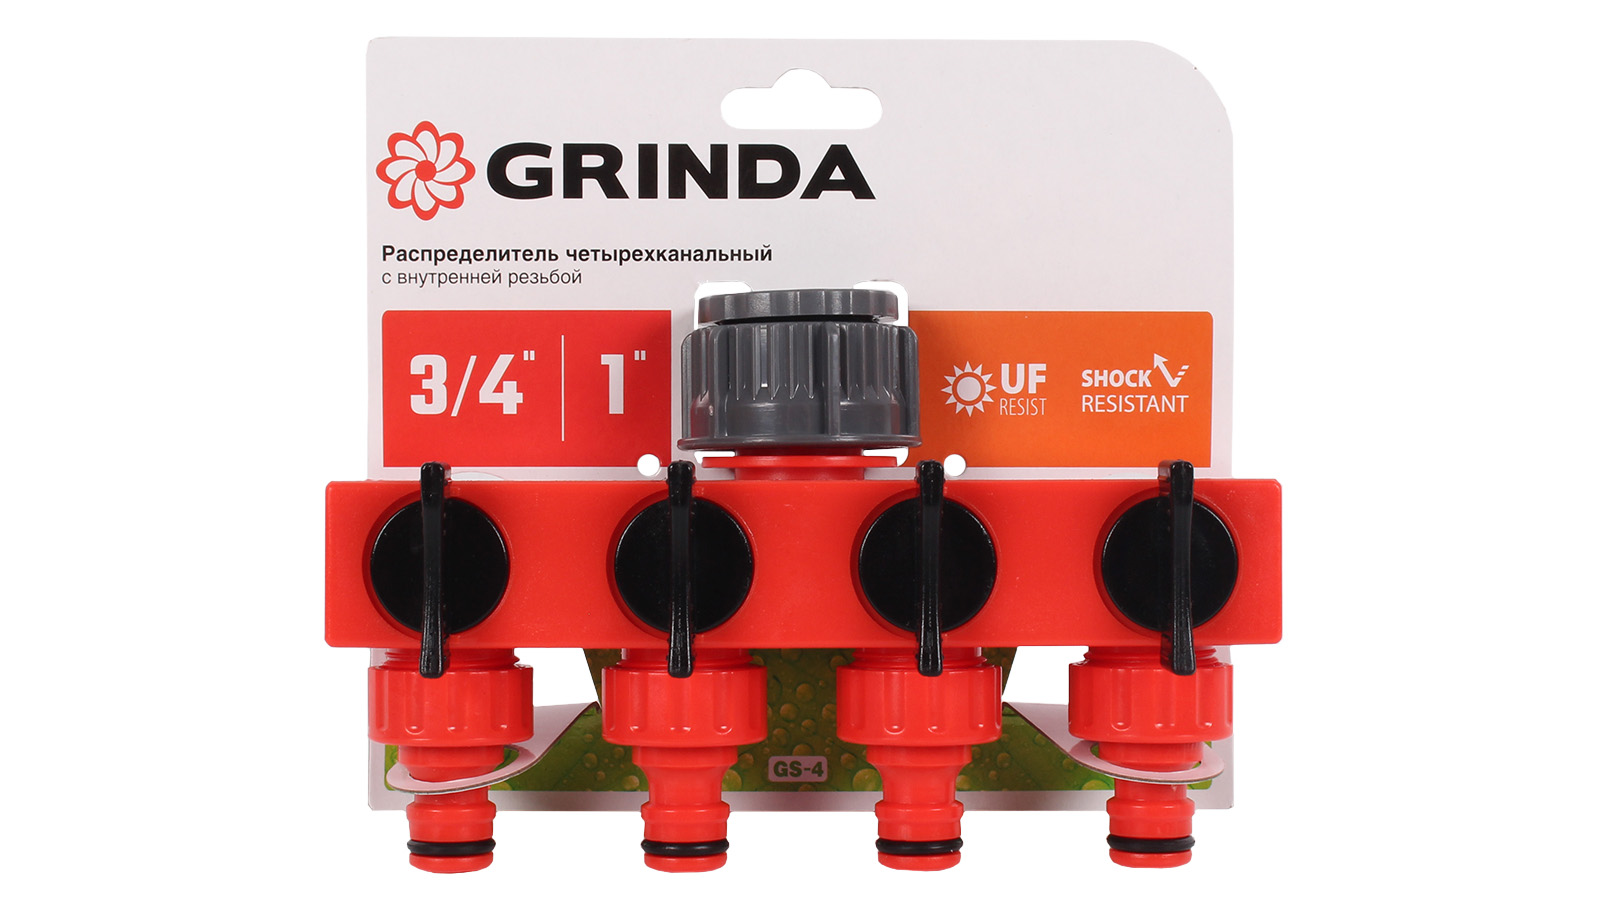 Распределитель поливочный GRINDA GS-4 3/4-1 четырехканальный фотография №4